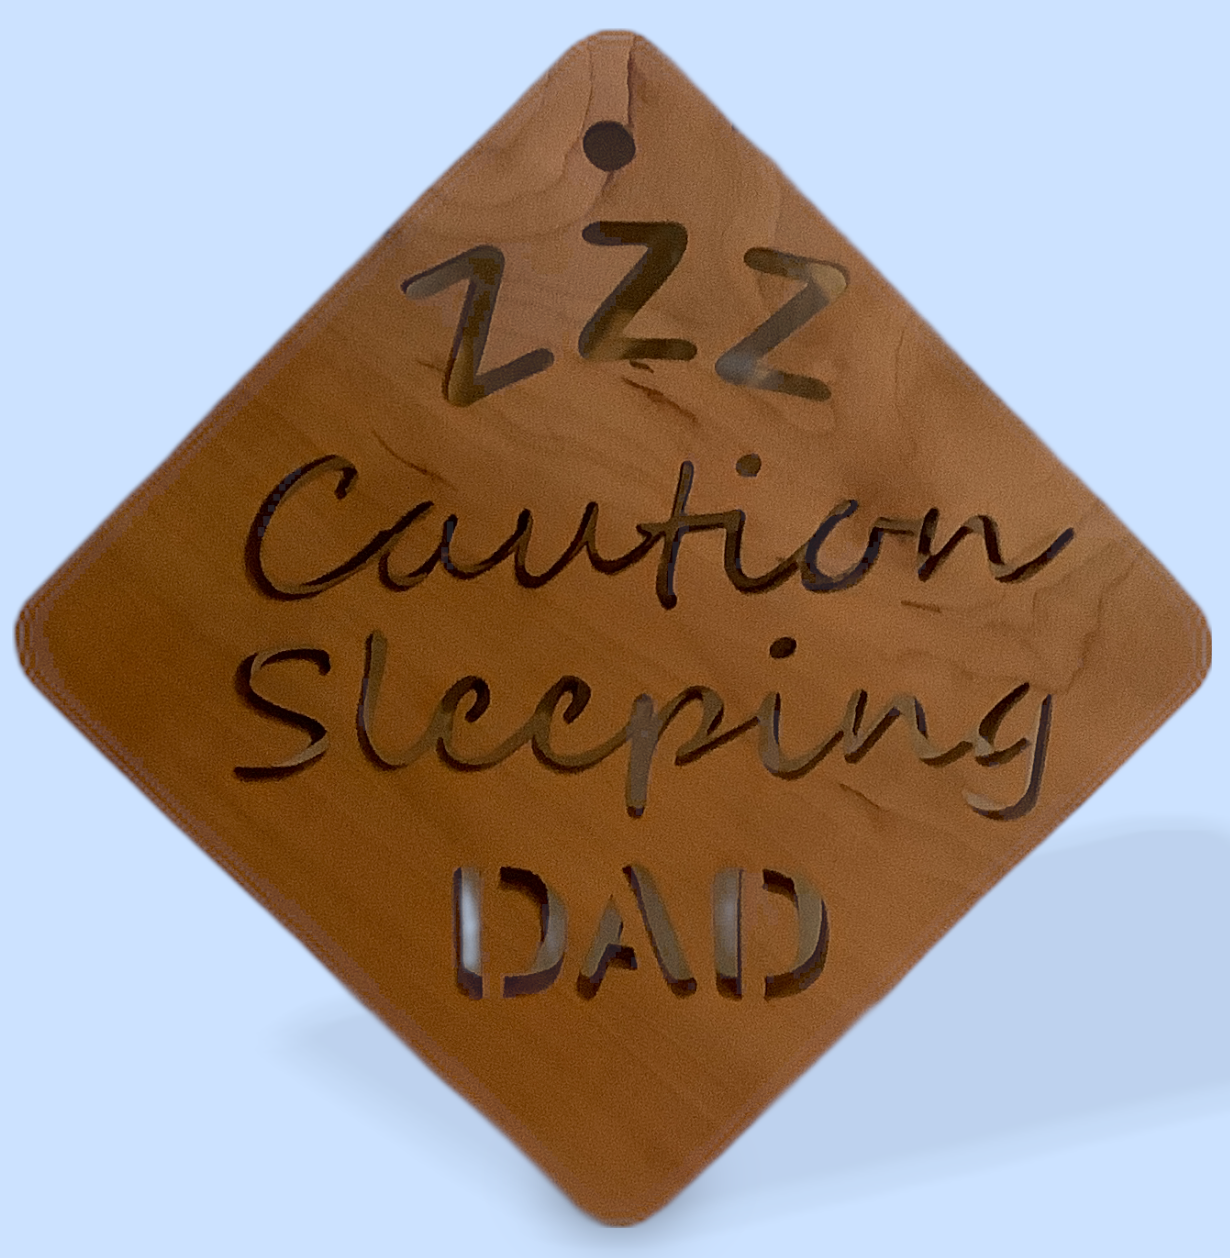 Sleeping Dad